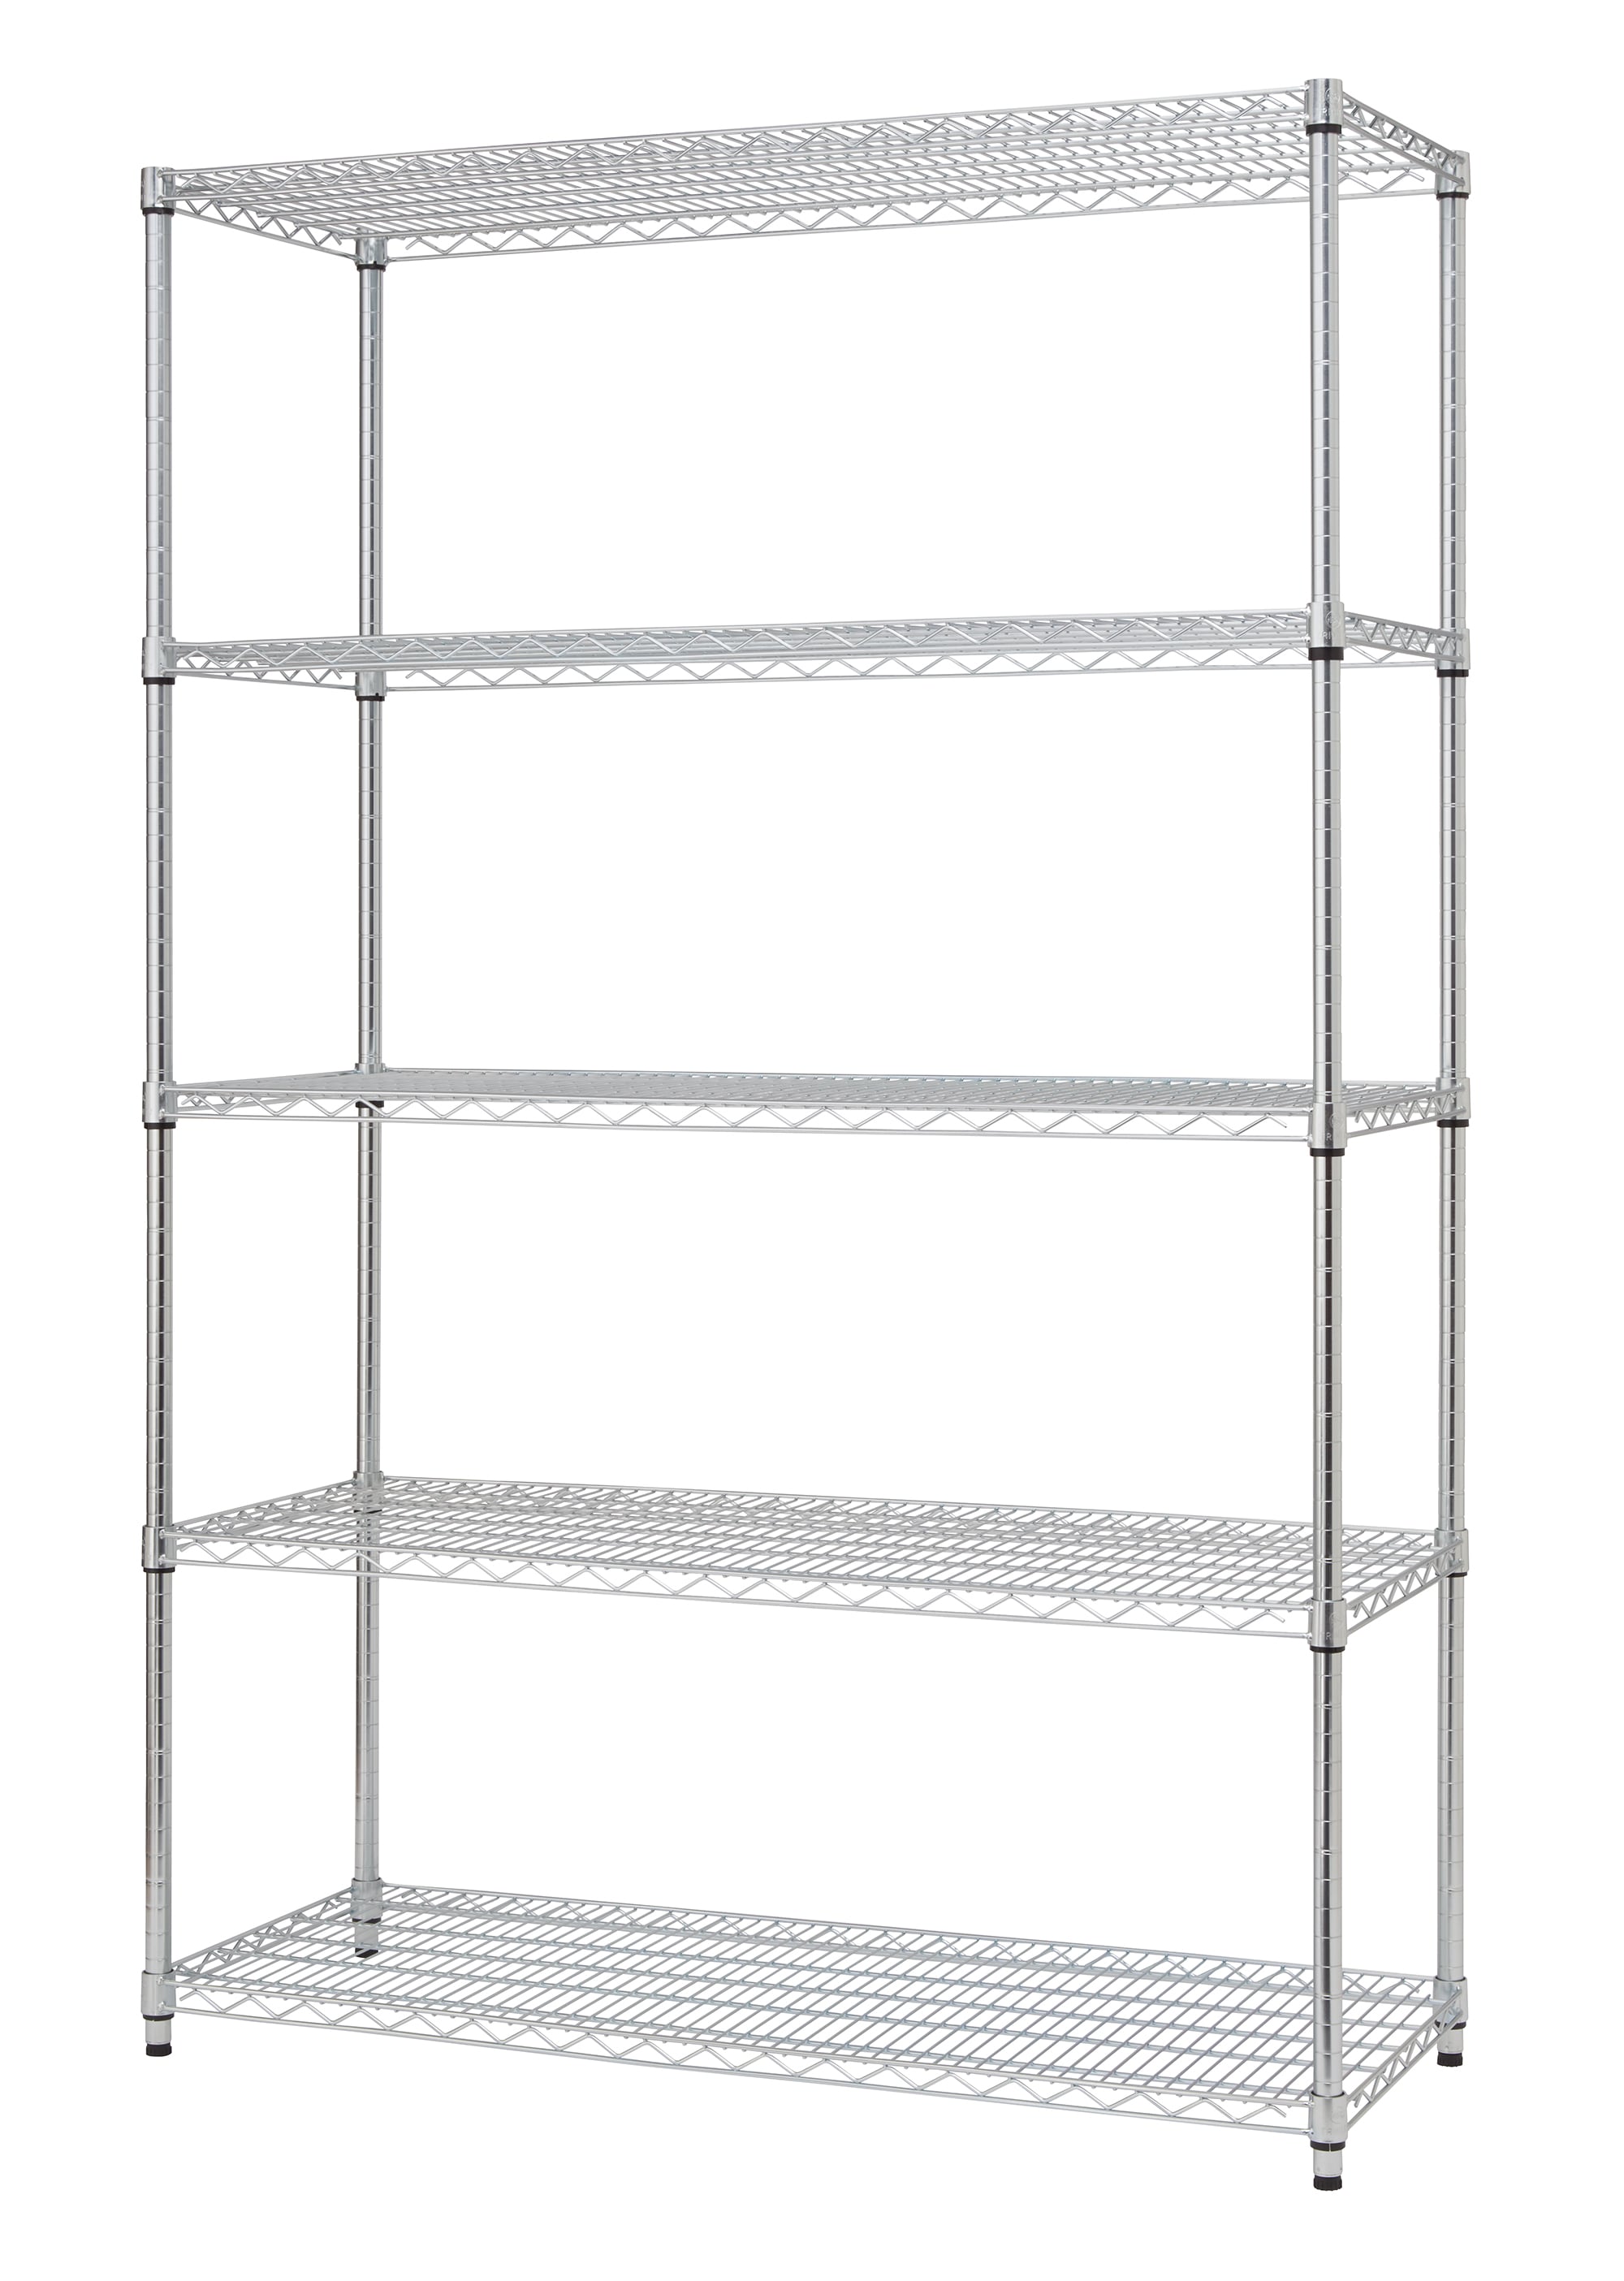 White 5-Tier Heavy Duty Metal Freestanding Storage Shelving Unit (32 in. W x 63 in. H x 16.5 in. D)